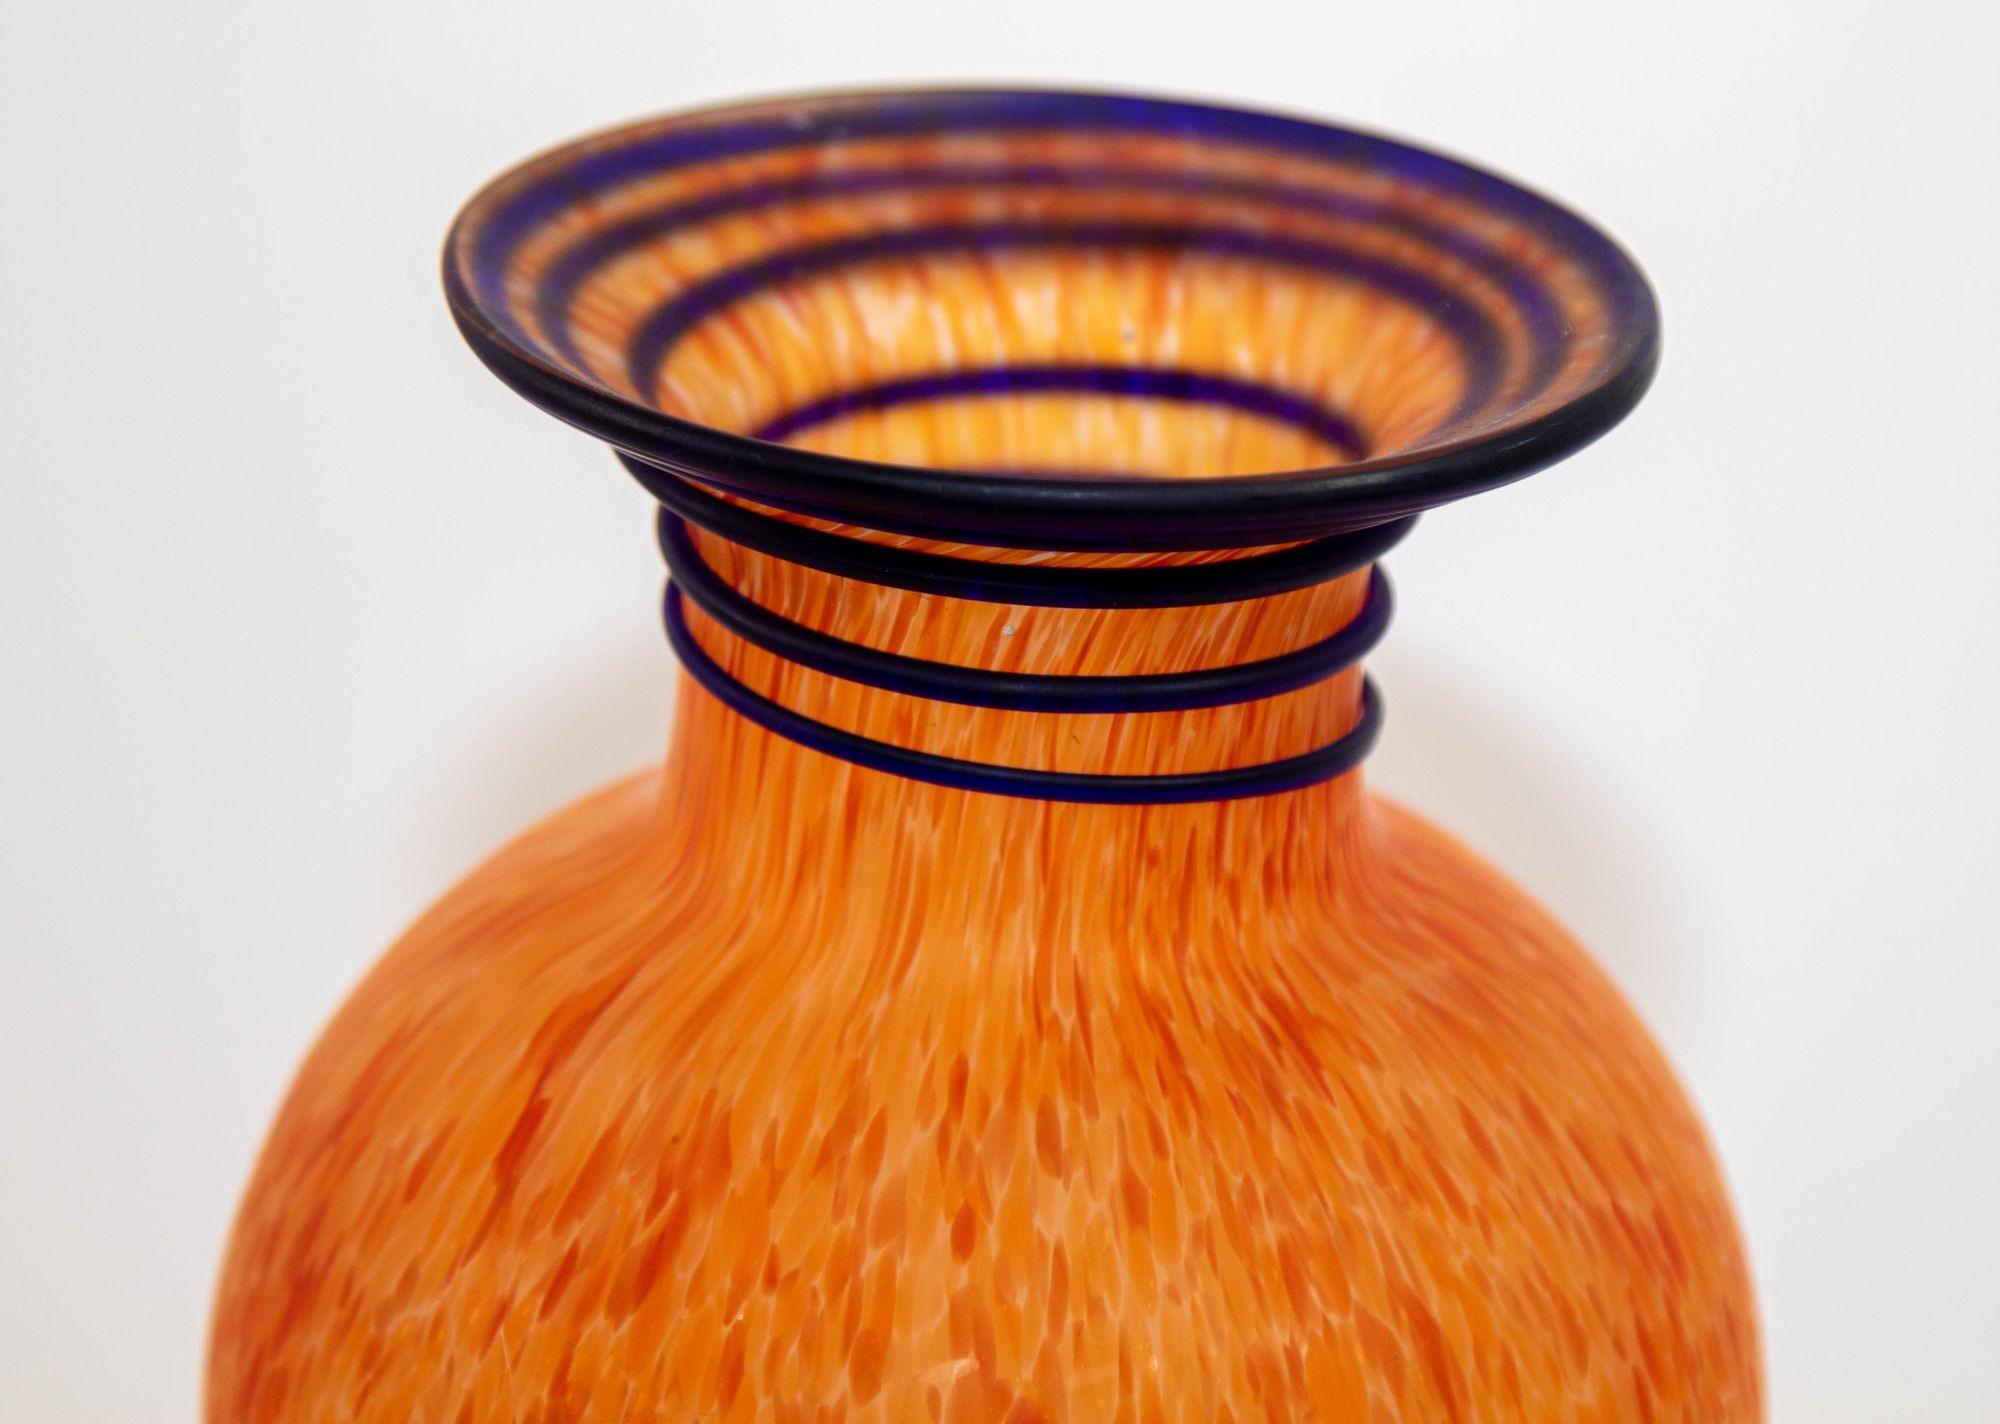 Murano Italian Art mehrfarbige Konfetti Glasvase, urnenförmige Vase, Italien.
1960er Jahre Vintage schöne Urne Form zarten mundgeblasenen italienischen Kunstglas Vase mit gesprenkelten orange mit einem blauen Spiralstreifen auf der Oberseite des